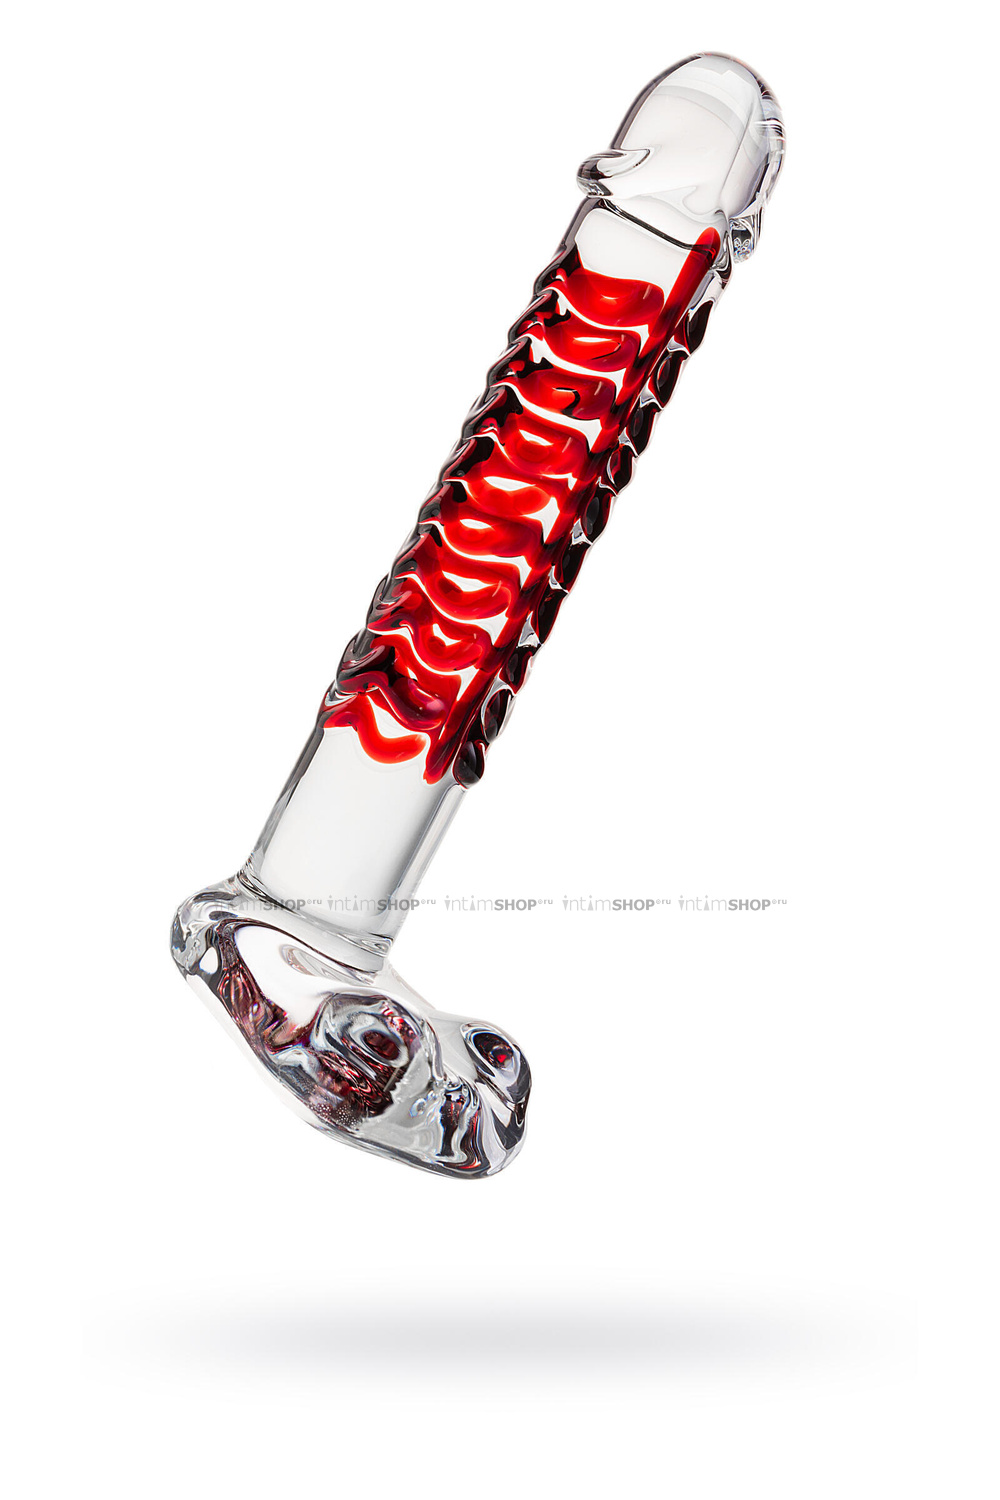 Фаллоимитатор Sexus Glass с красной ребристой поверхностью, бесцветный, 16 см